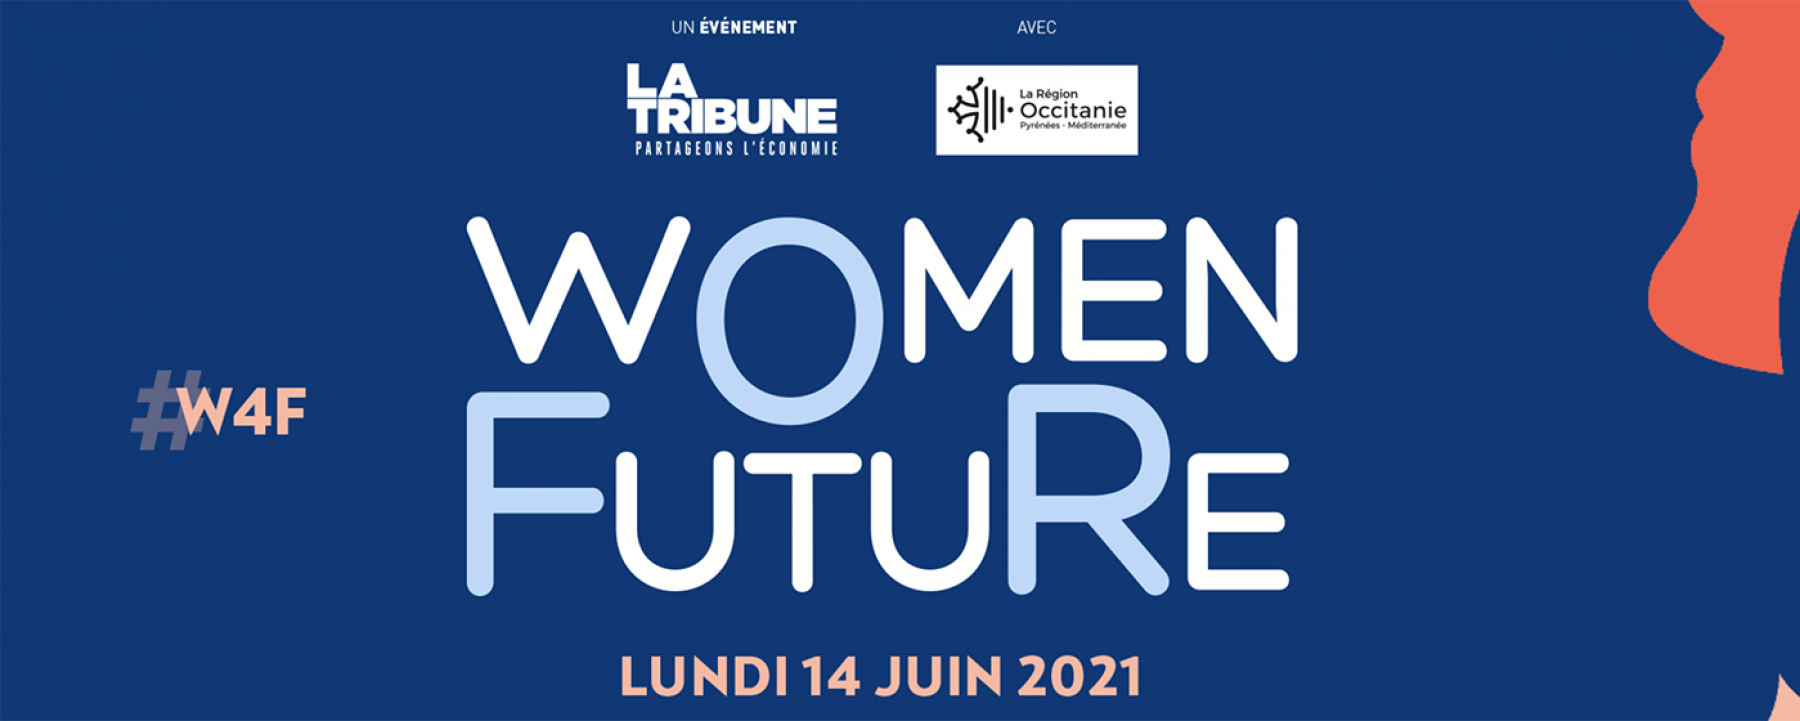 Women For Future, le 14 juin par La Tribune